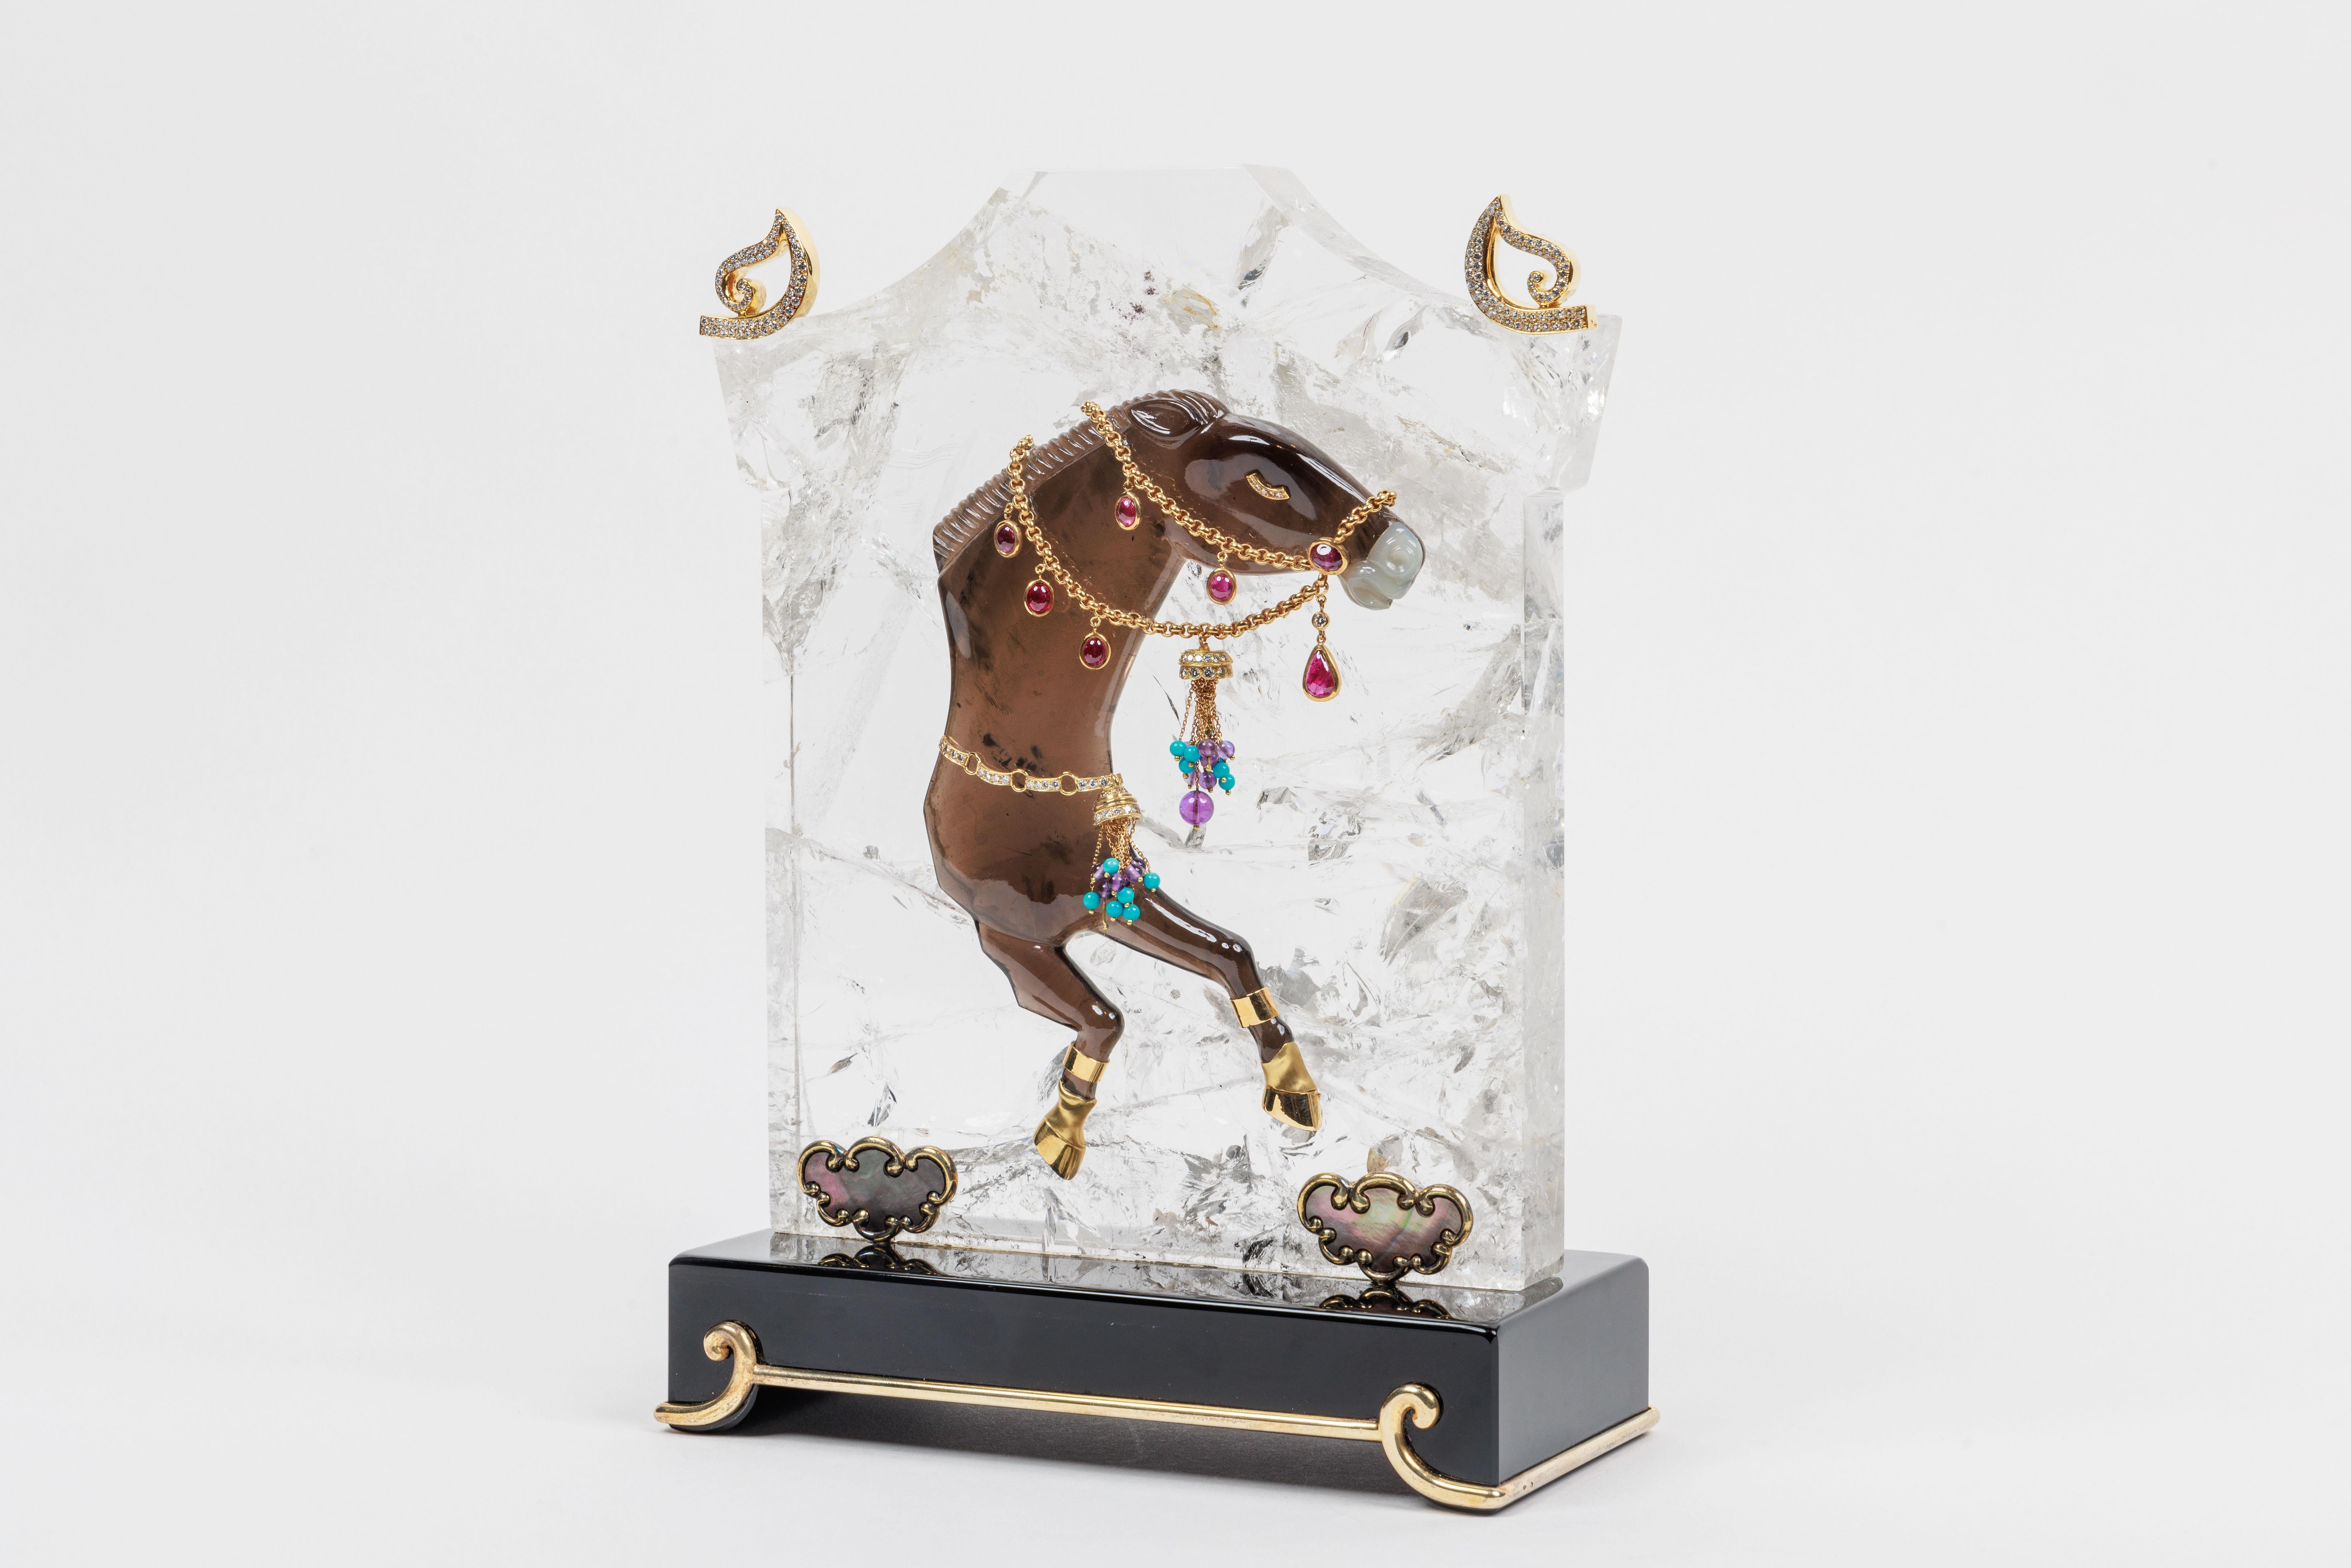 Mellerio Paris, Ein französisches Objekt aus Gold, Diamanten, vergoldetem Silber, Bergkristall, Jade, Perlmutt und Rauchquarz, geschnitzte Pferdeskulptur, mit Juwelen bestückt.

Eine extrem seltene und einzigartige französische Skulptur aus Gold,